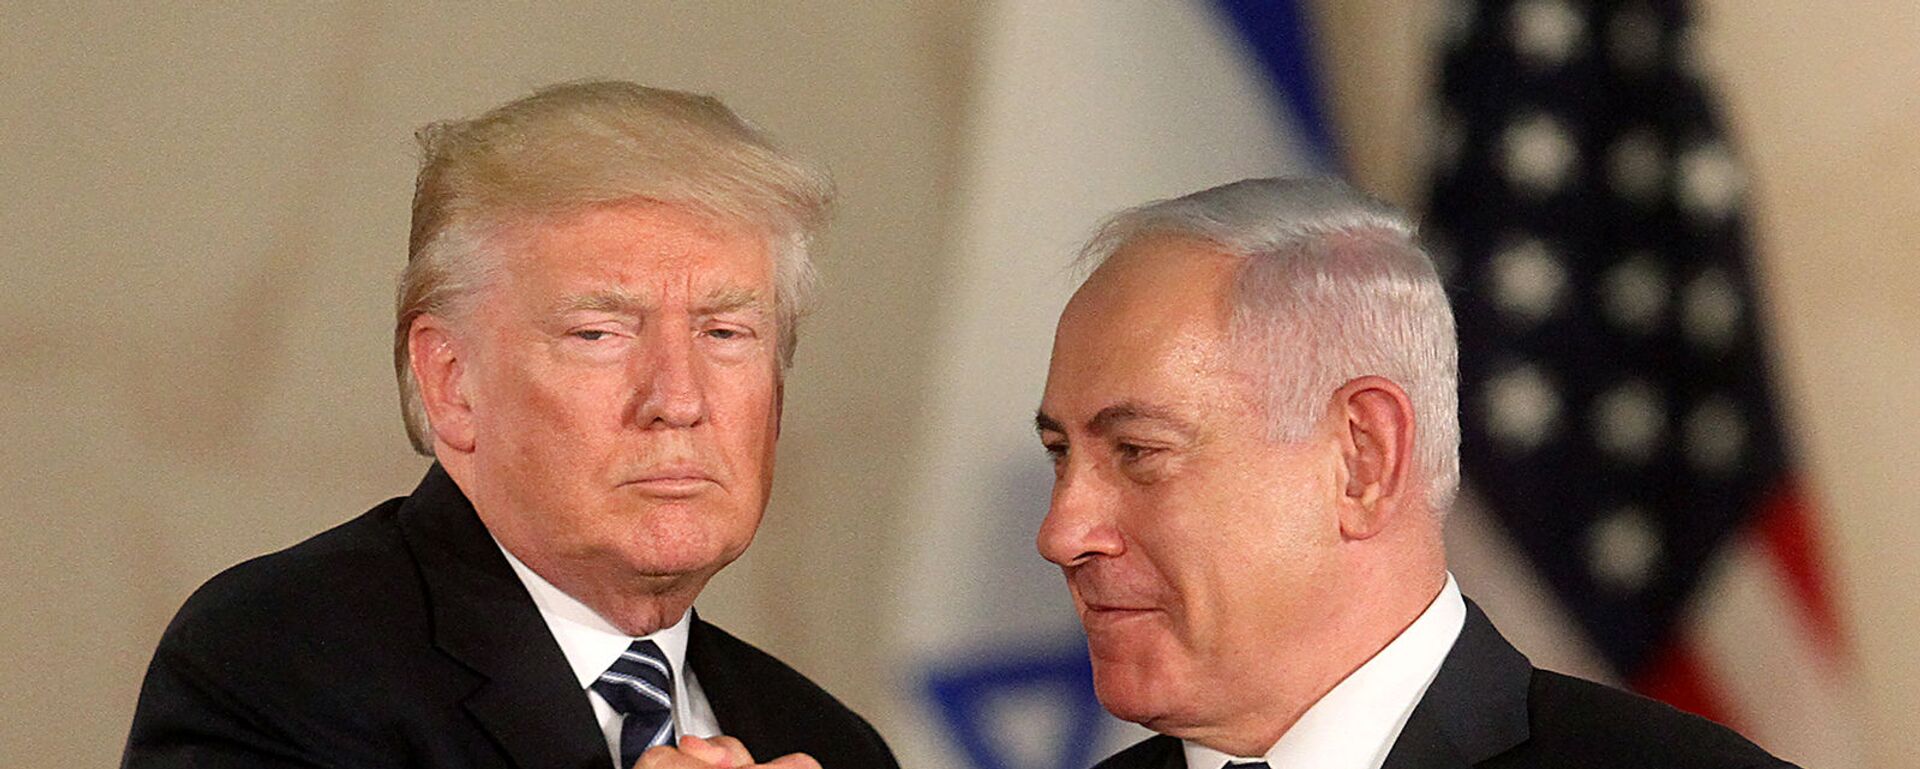 Президент США Дональд Трамп и премьер-министр Израиля Биньямин Нетаньяху в Музее Израиля (23 мая 2017). Иерусалим - Sputnik Армения, 1920, 28.03.2019